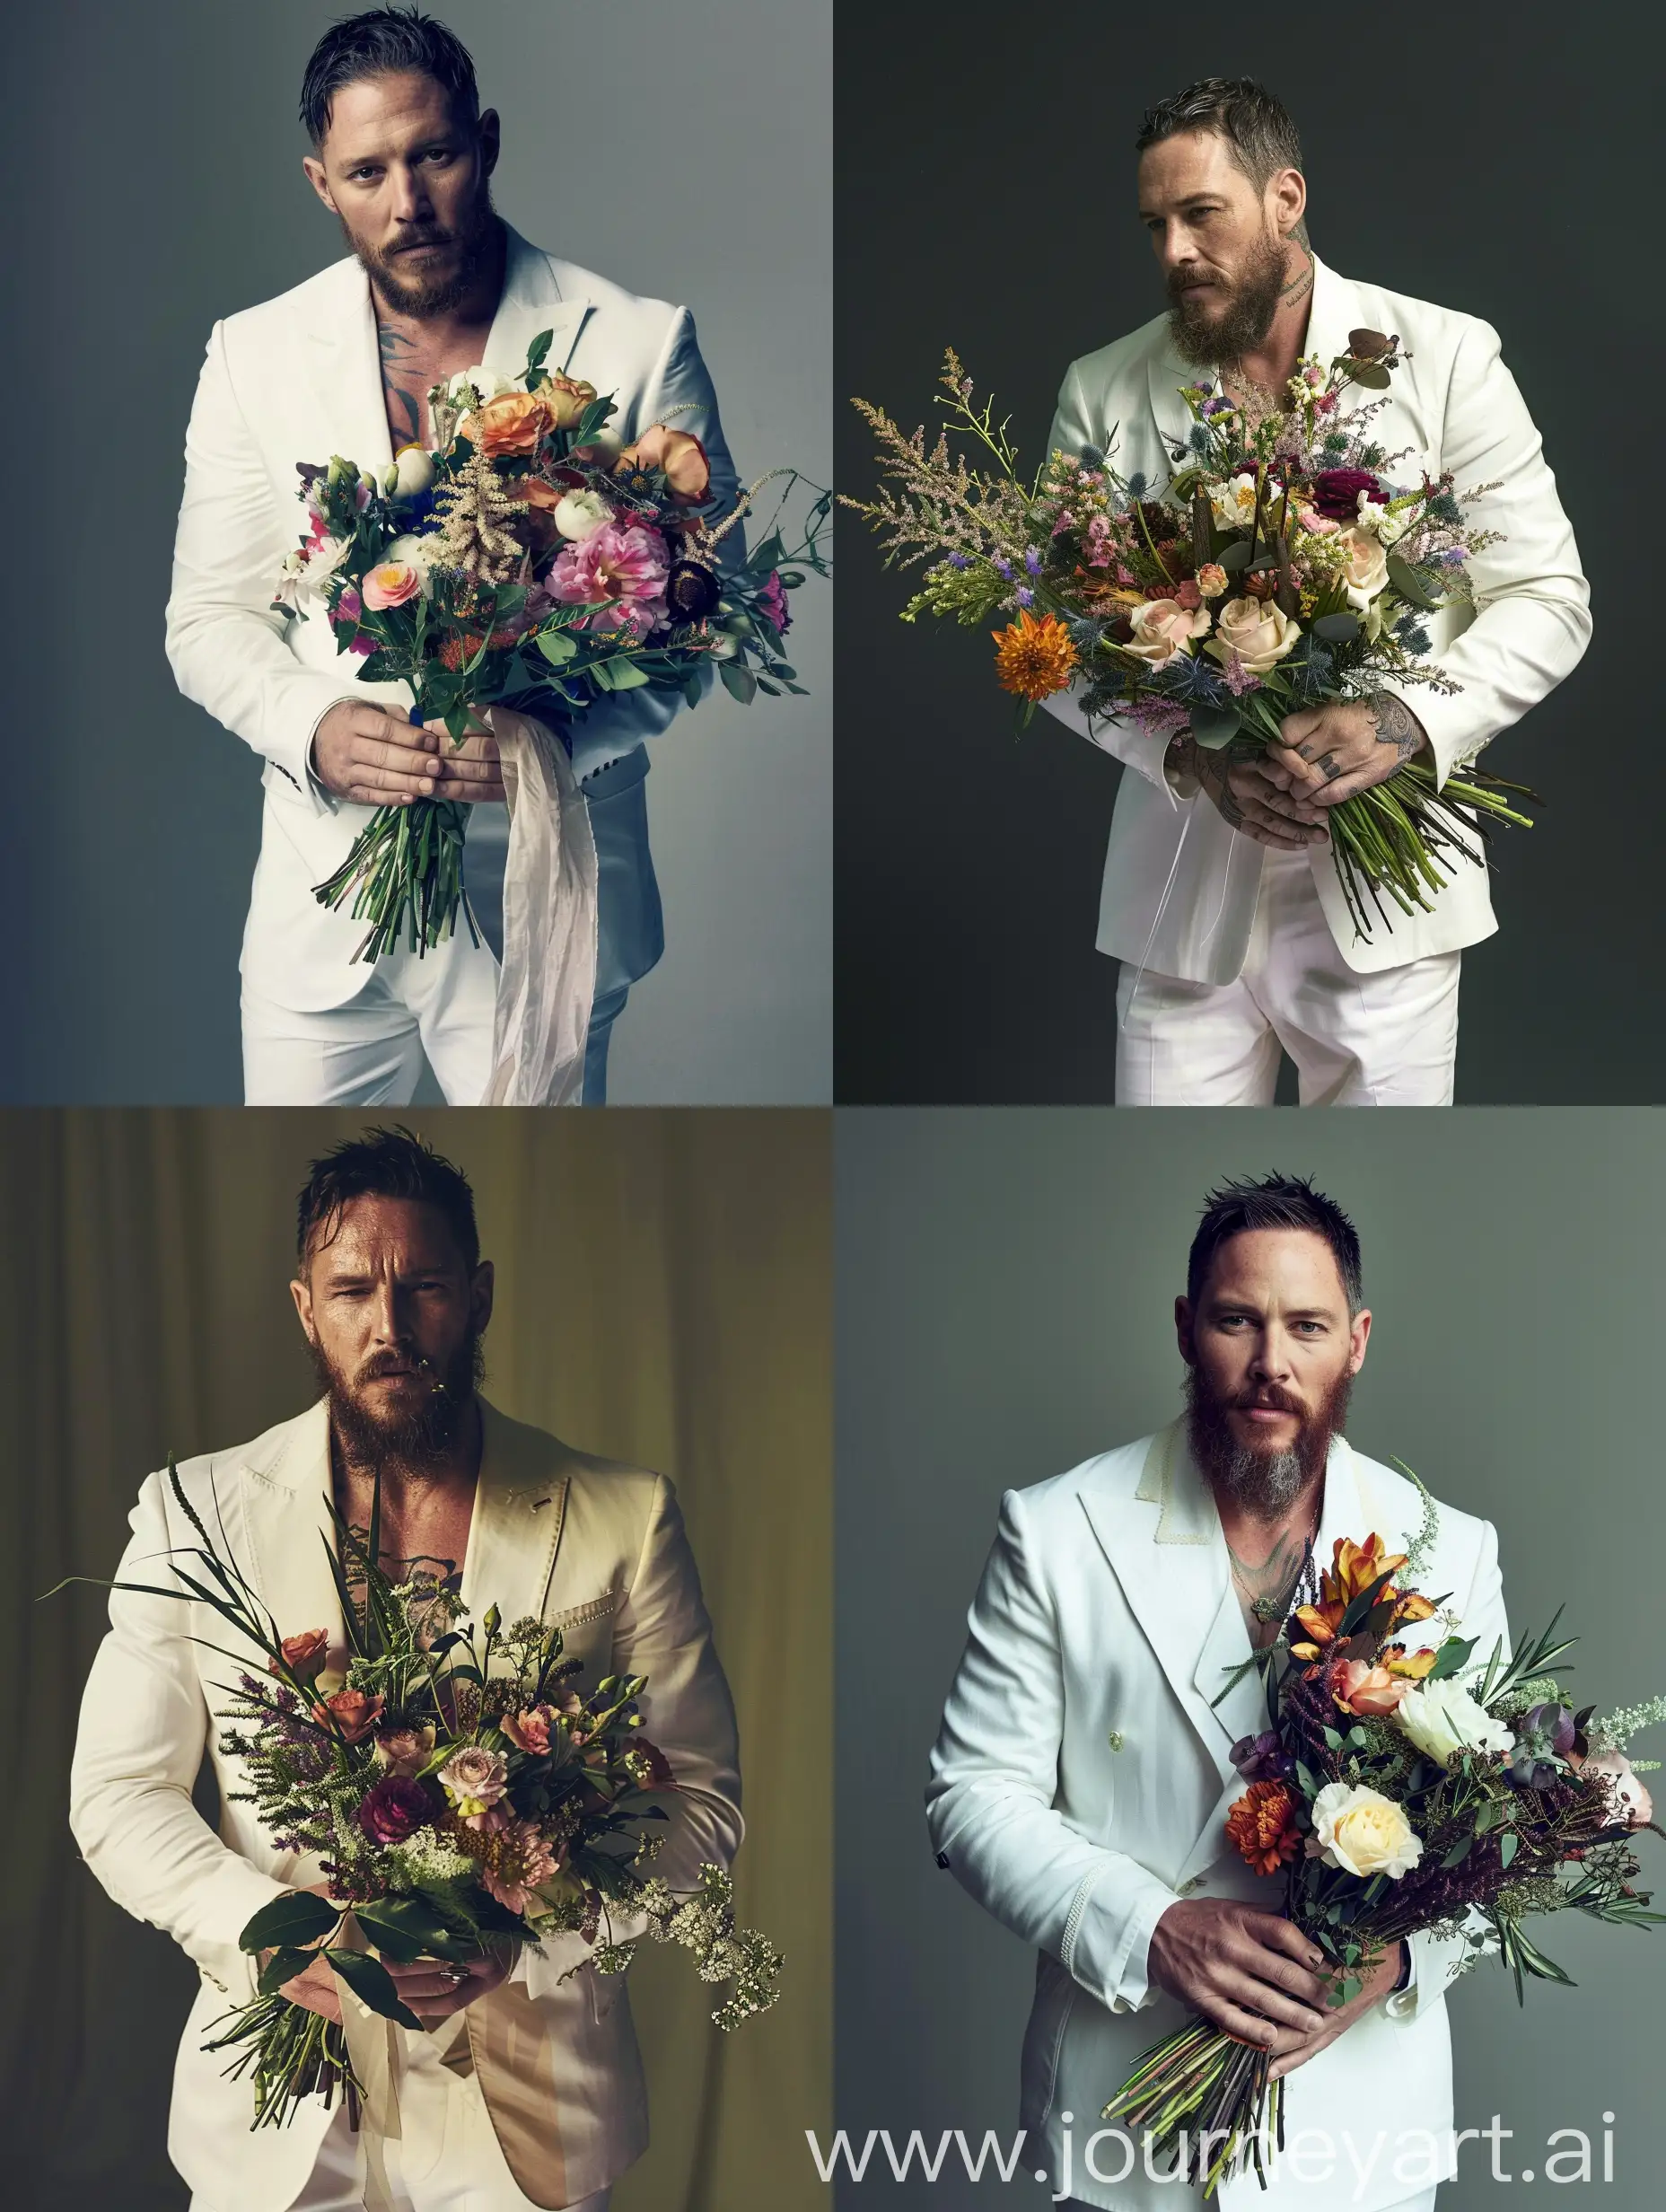 Том Харди с букетом цветов в белом костюме